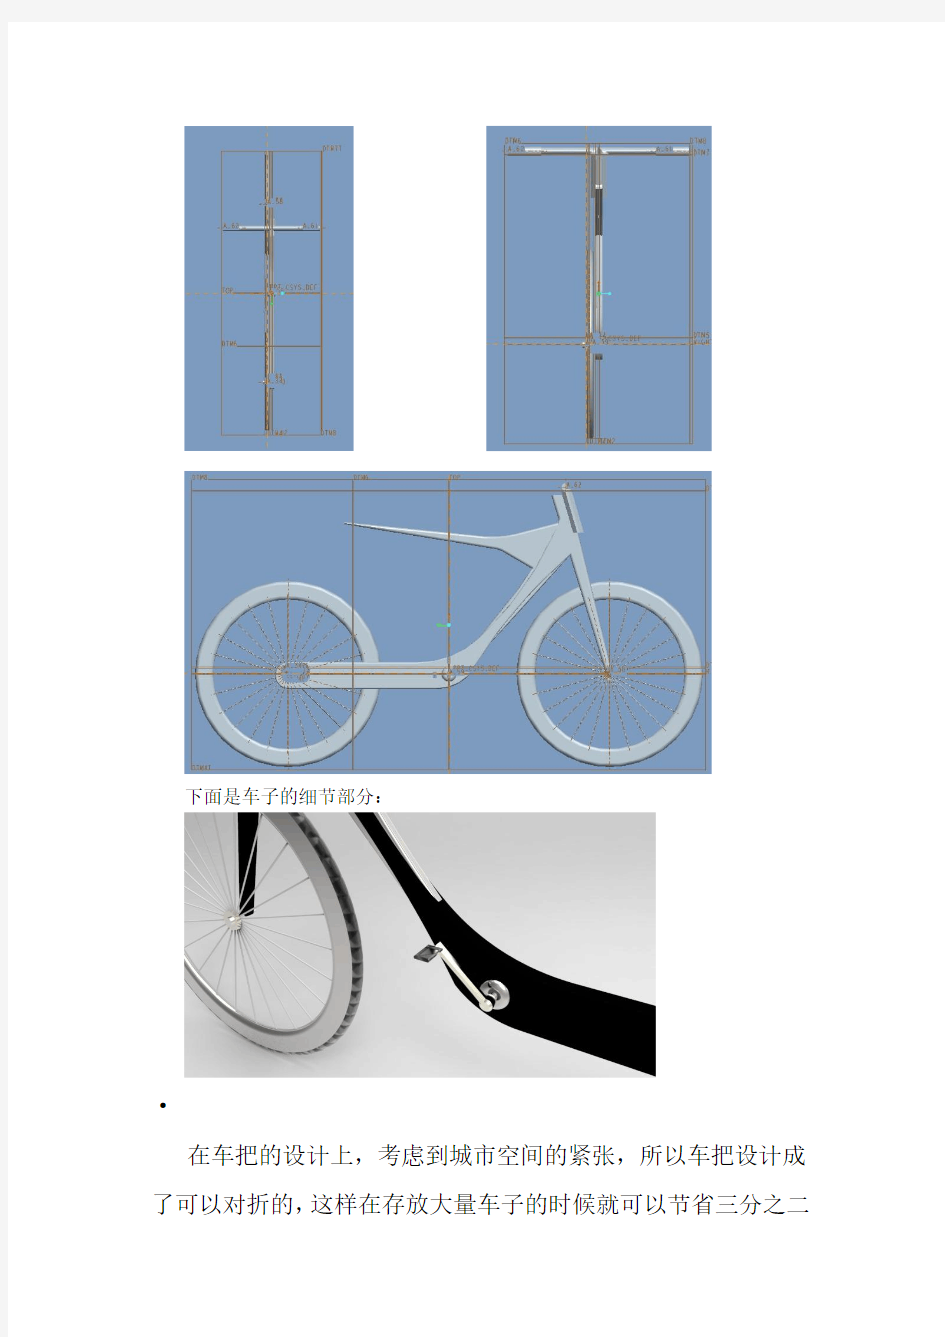 实用新型自行车专利申请说明书